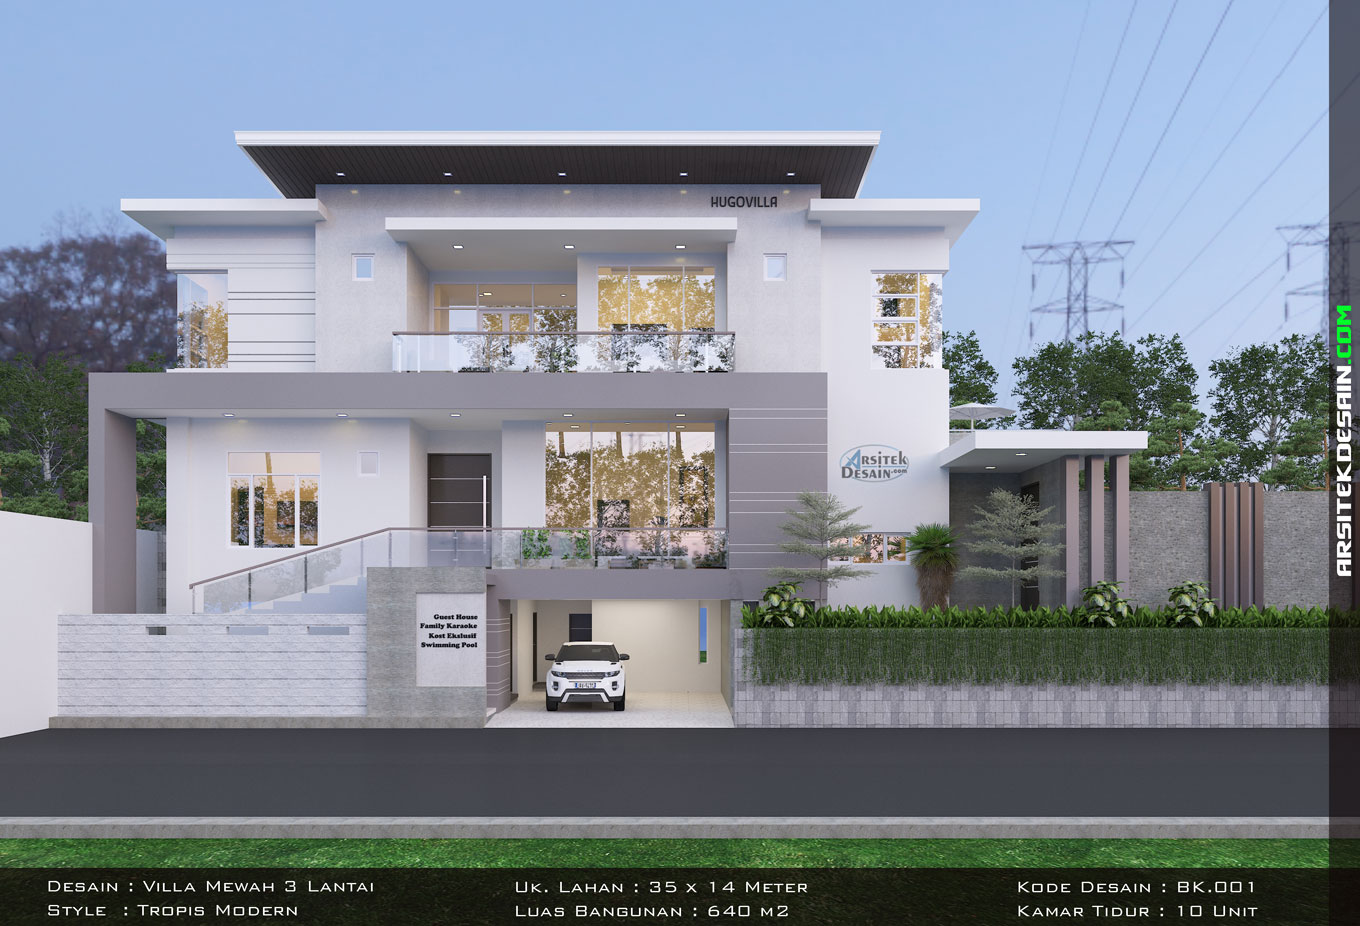 desain villa mewah tropis modern 3 lantai